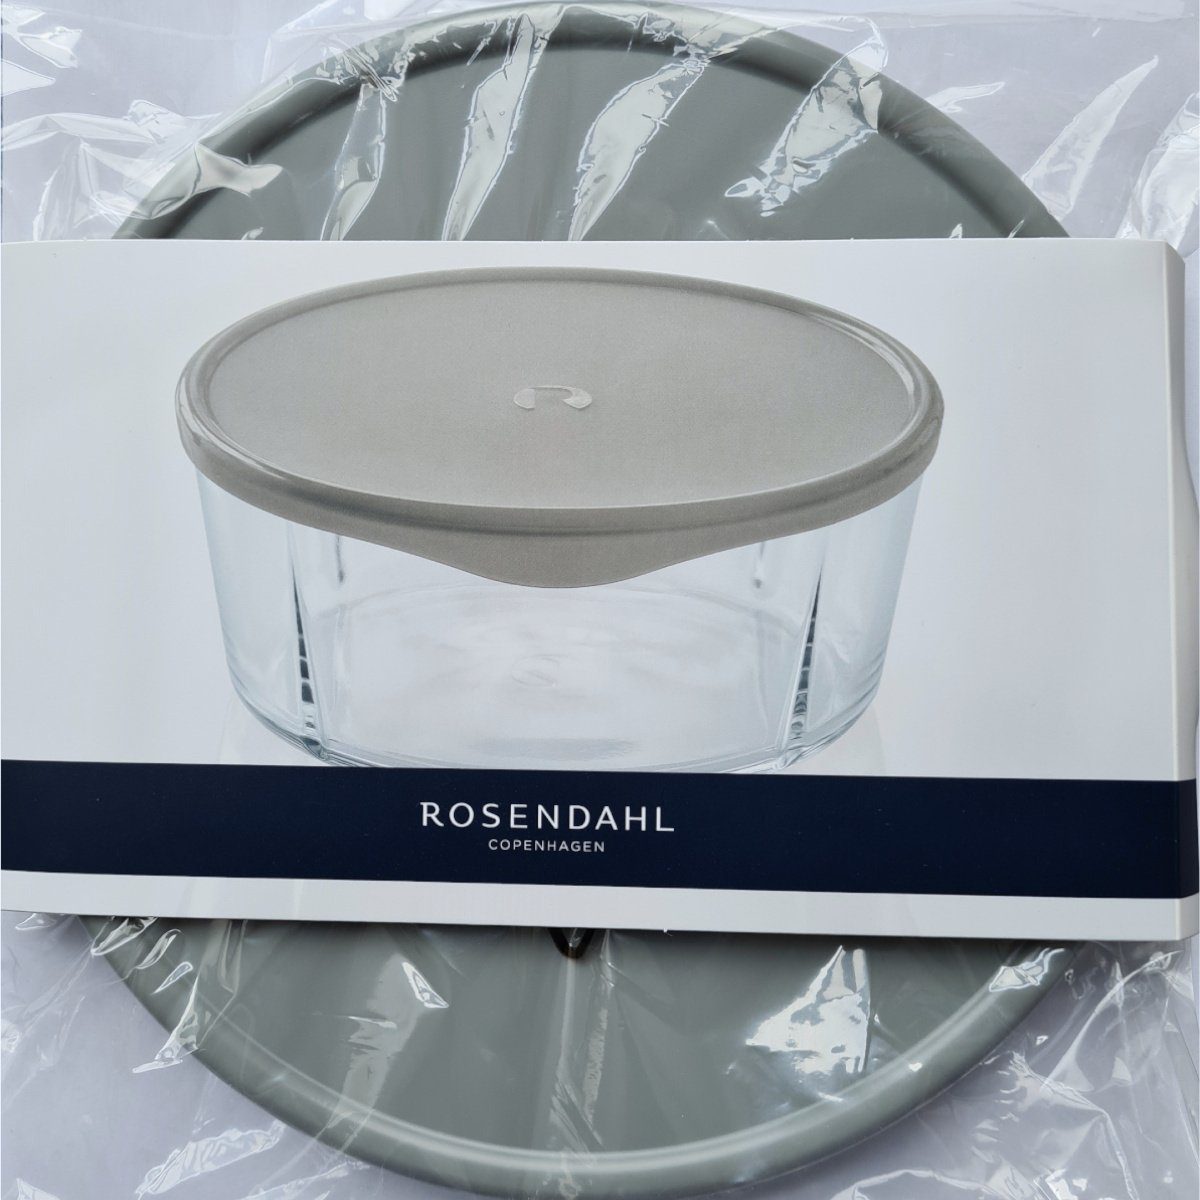 lebensmittelsicher), 25606 für Modell (Polyethylen, Schale GC cm, zu 24.5 Schale Passend ofenfeste Deckel Kunststoff Rosendahl